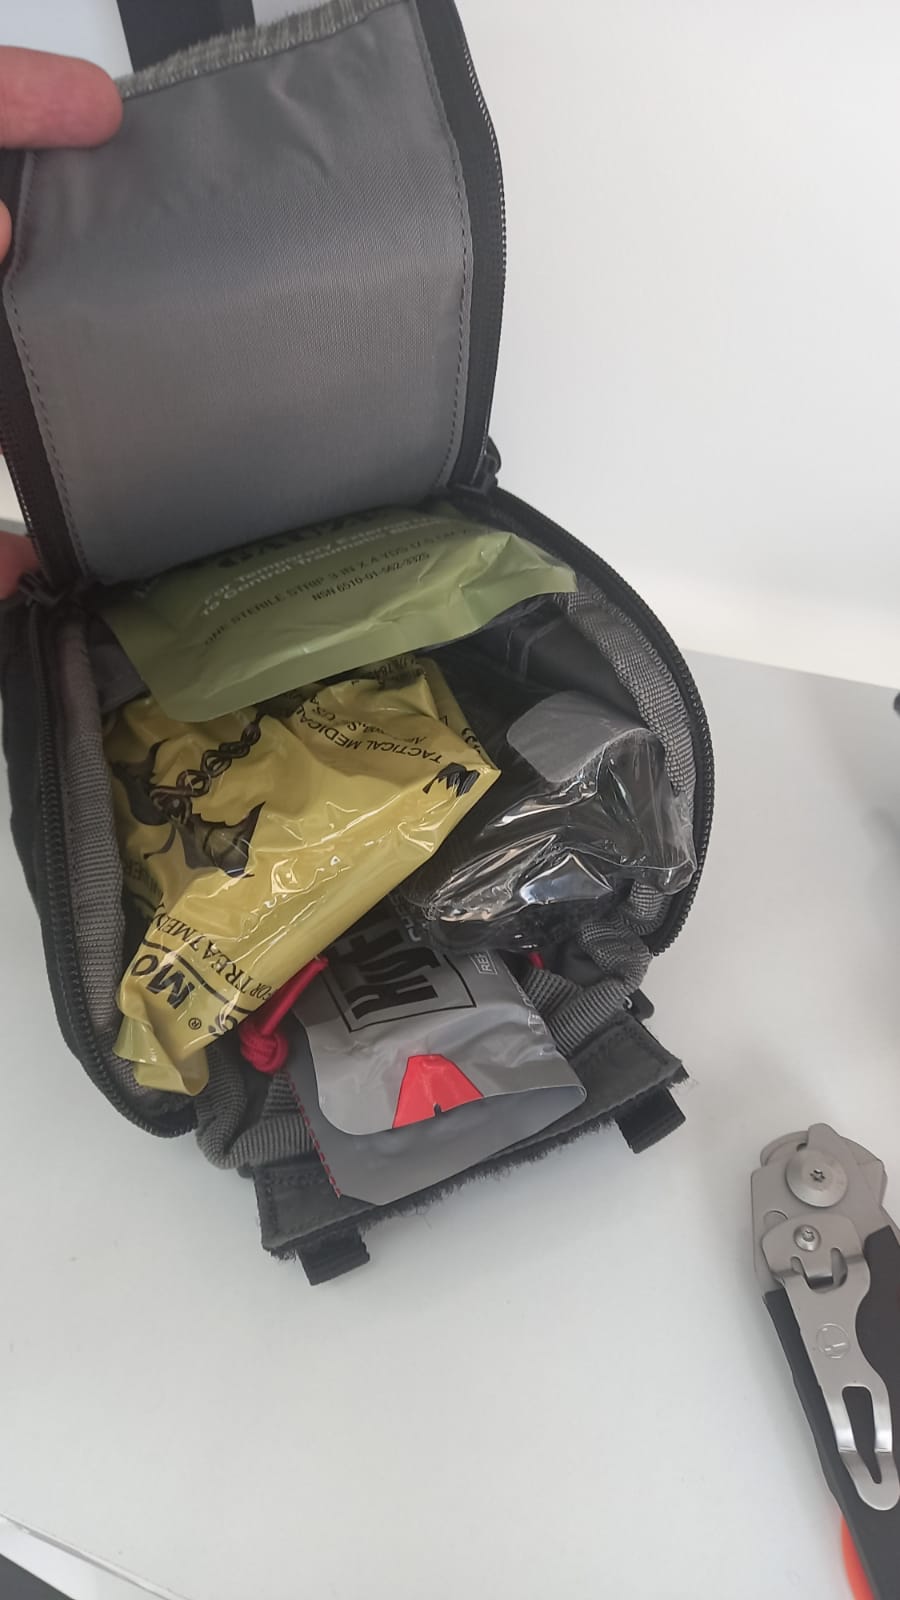 IIFAKs Kits With Backpack